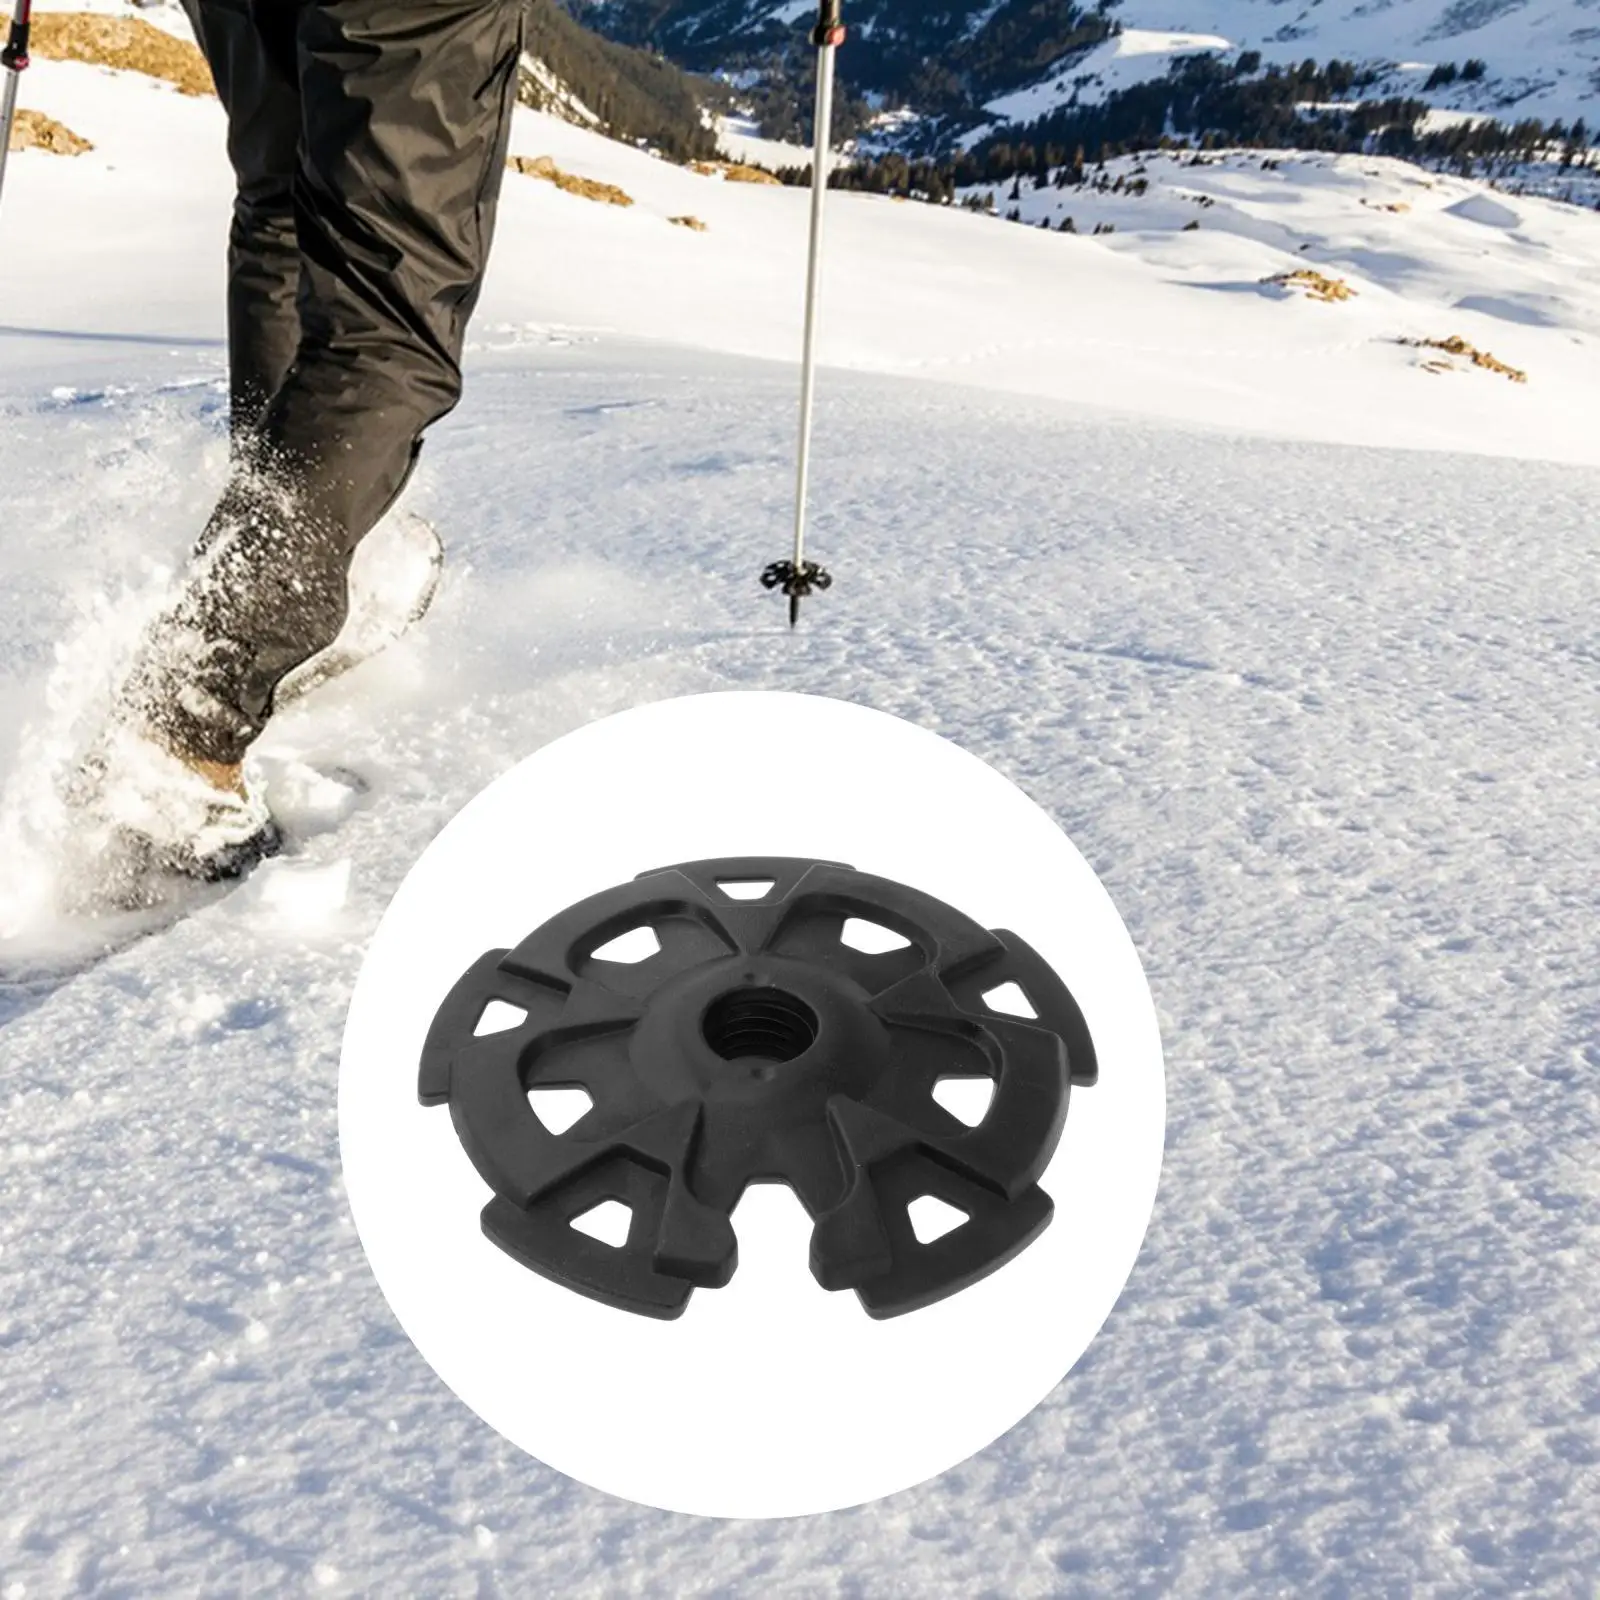 Walking Pole Snow Basket Mud Basket Walking Sticks Tip Protector Professional